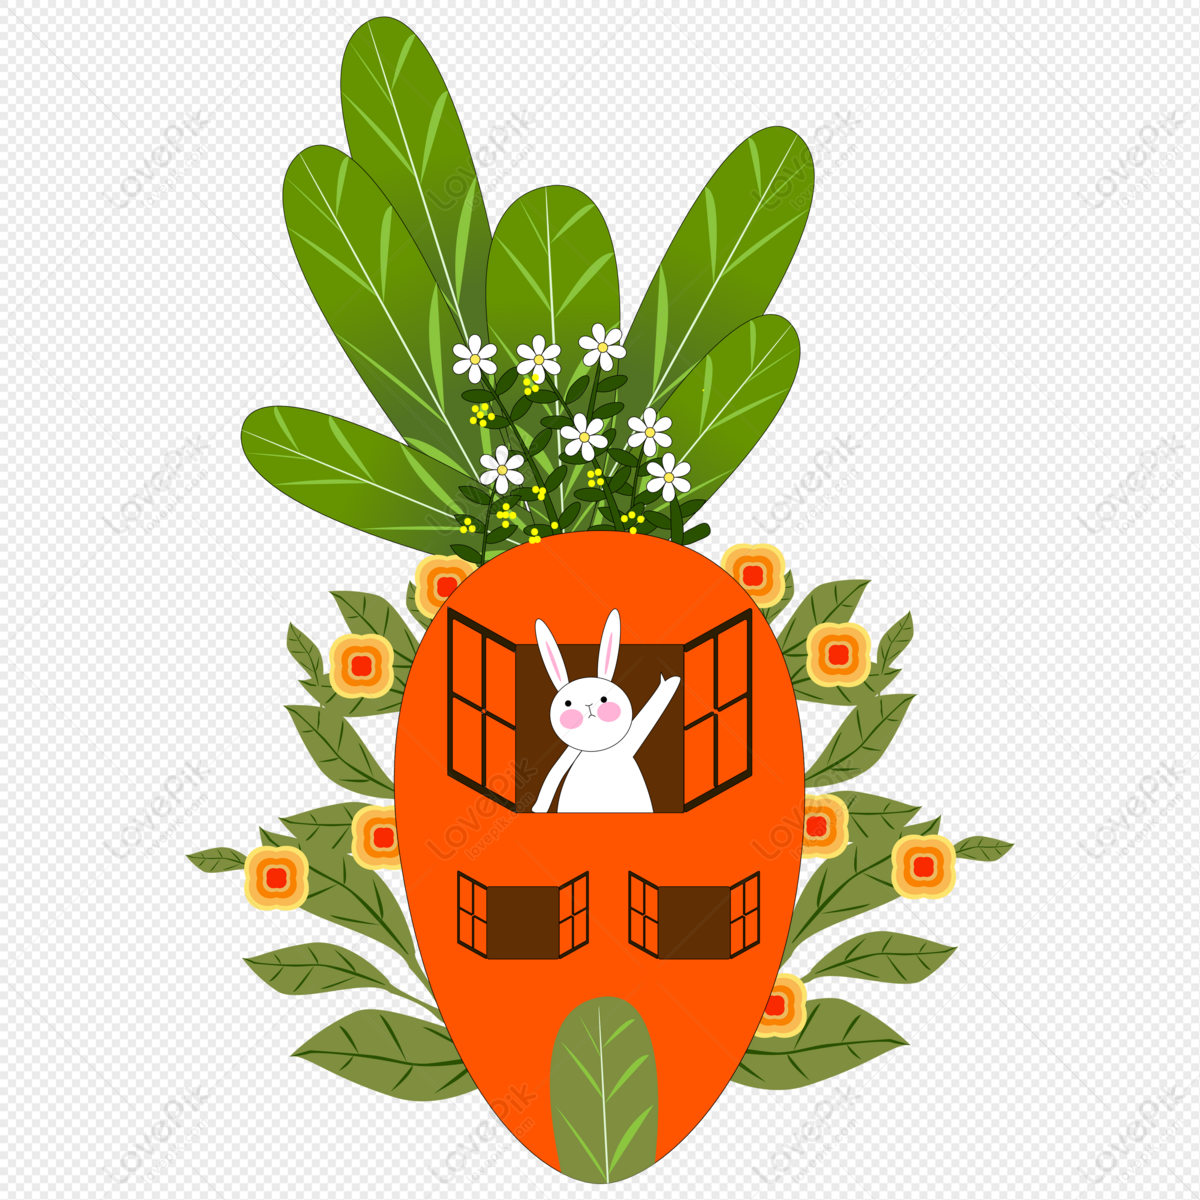 Hình ảnh căn nhà củ cà rốt với thiết kế thỏ hoa lá độc đáo và cực kỳ thú vị sẽ khiến bạn ngạc nhiên và nghĩ ngợi suy nghĩ về sự sáng tạo của con người.